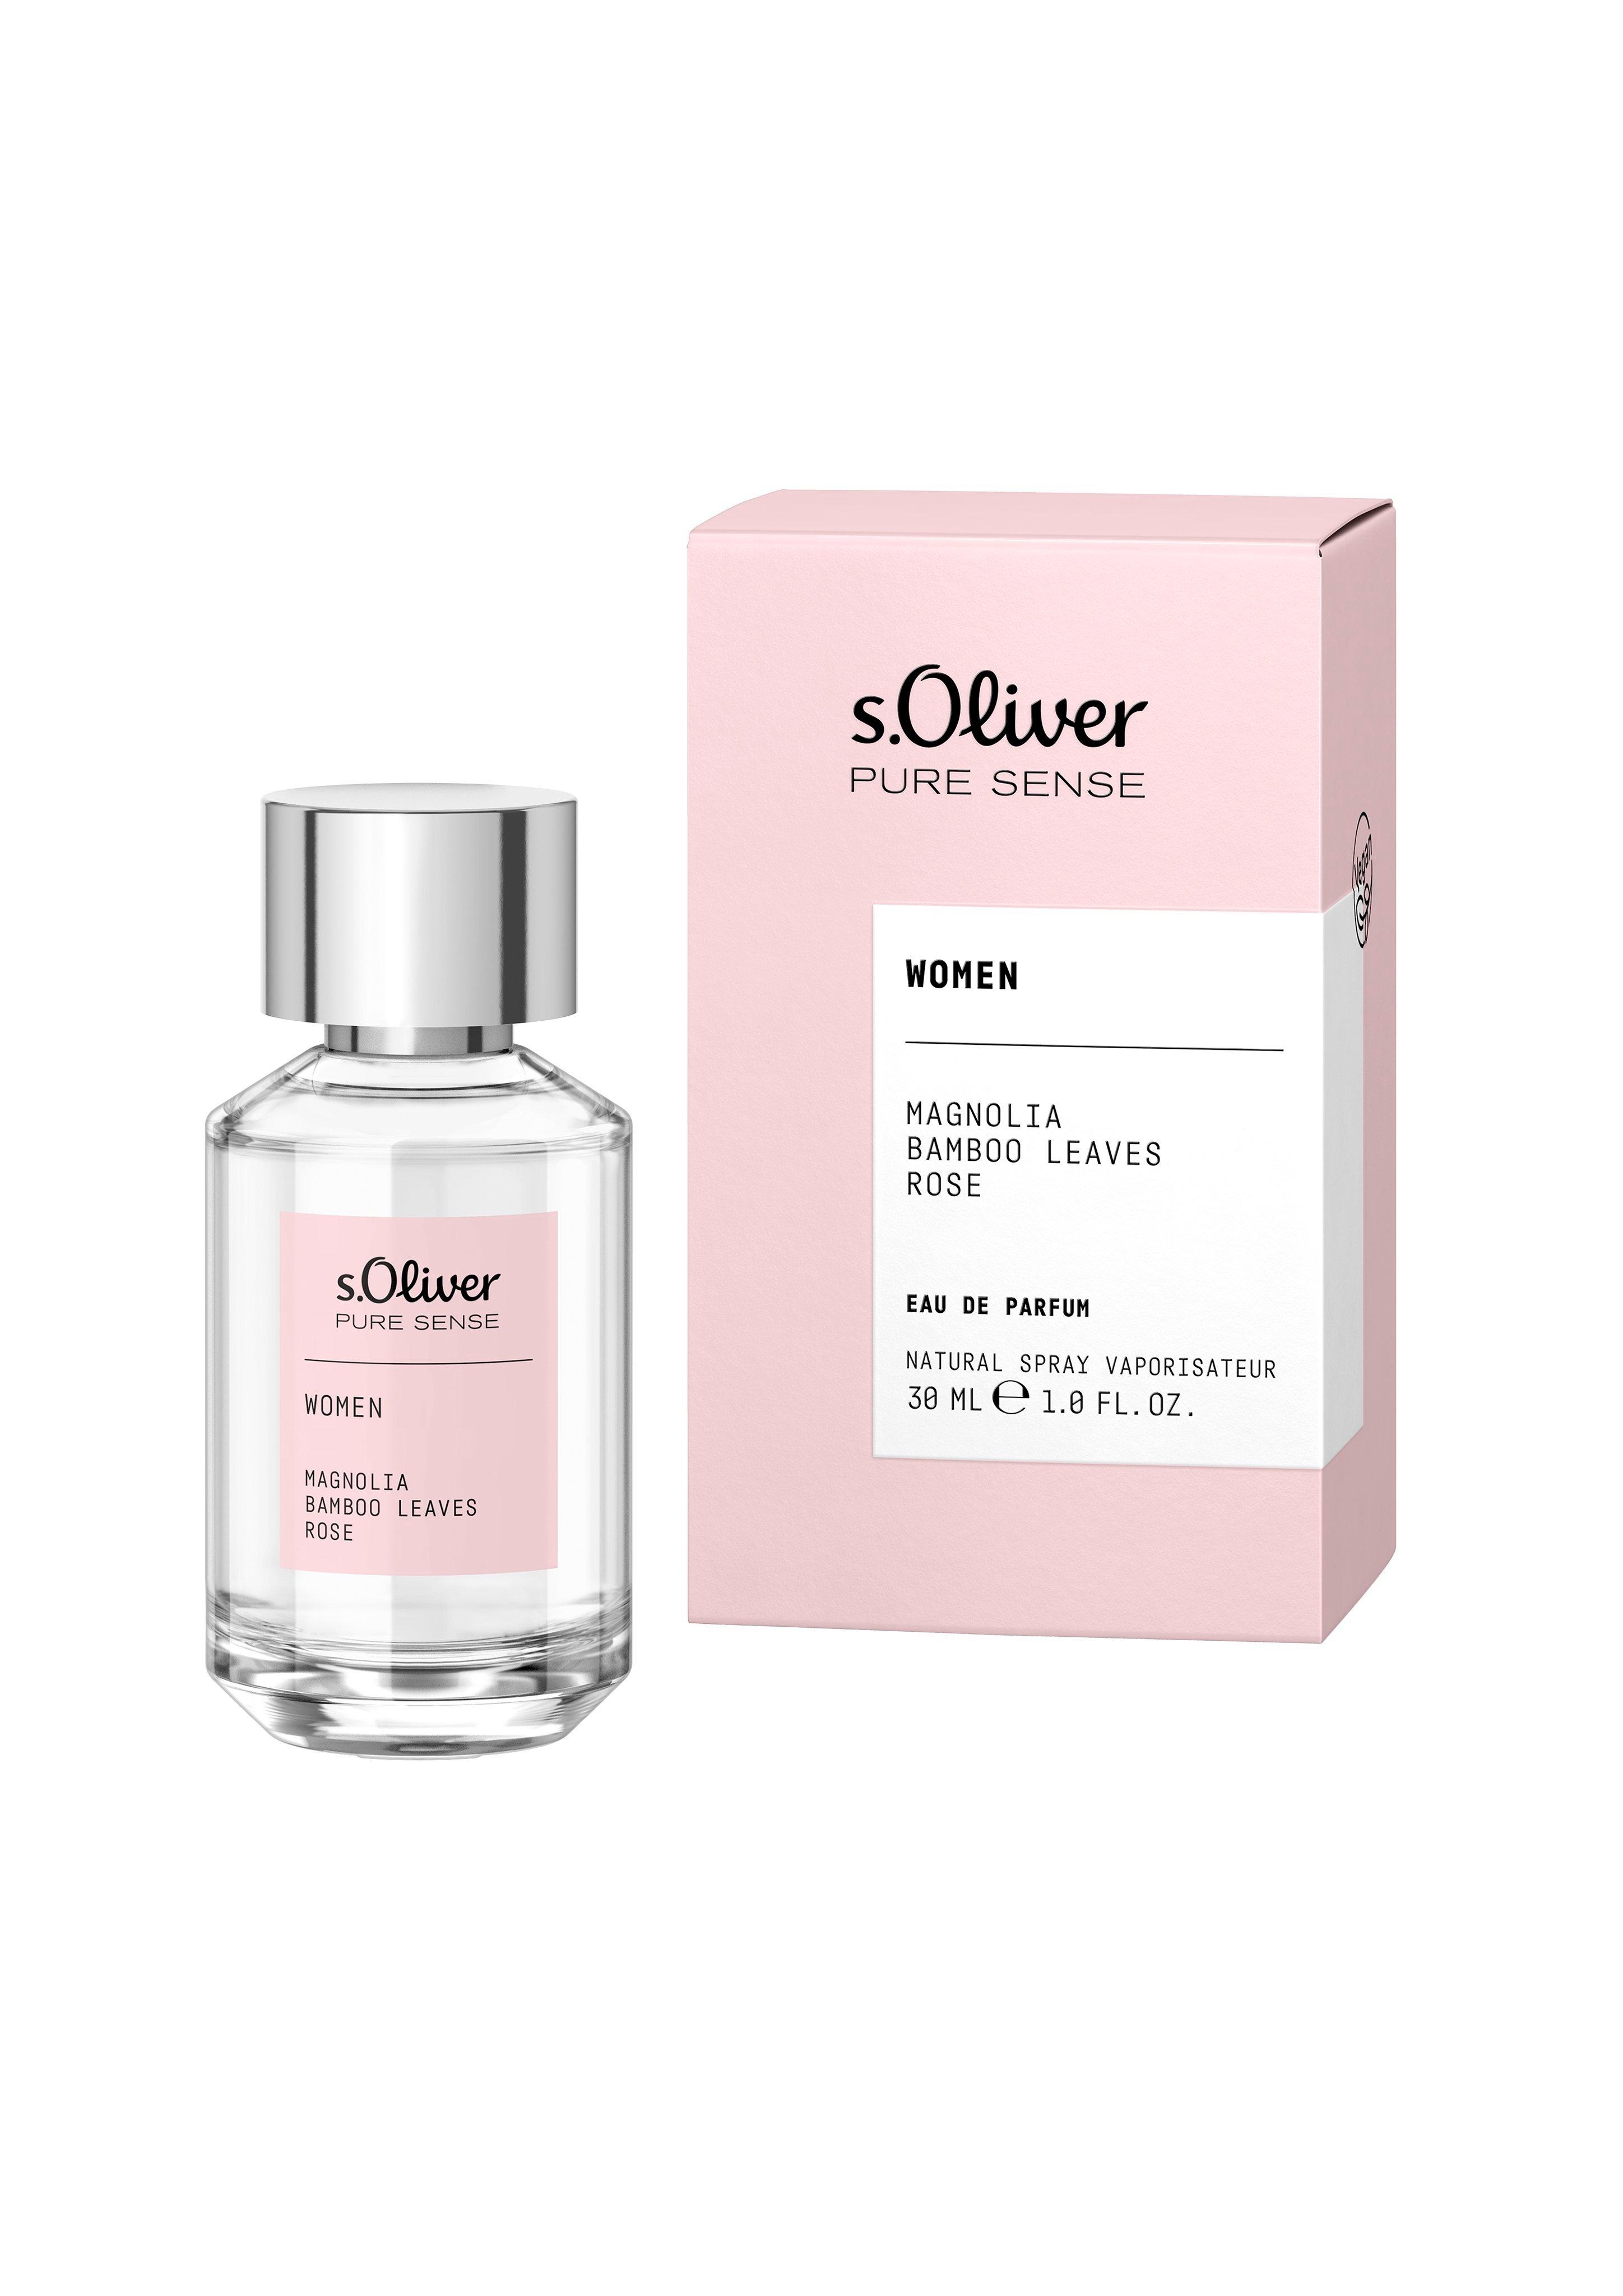 Dames PURE SENSE eau parfum 30 ml - roze www.soliver-online.be